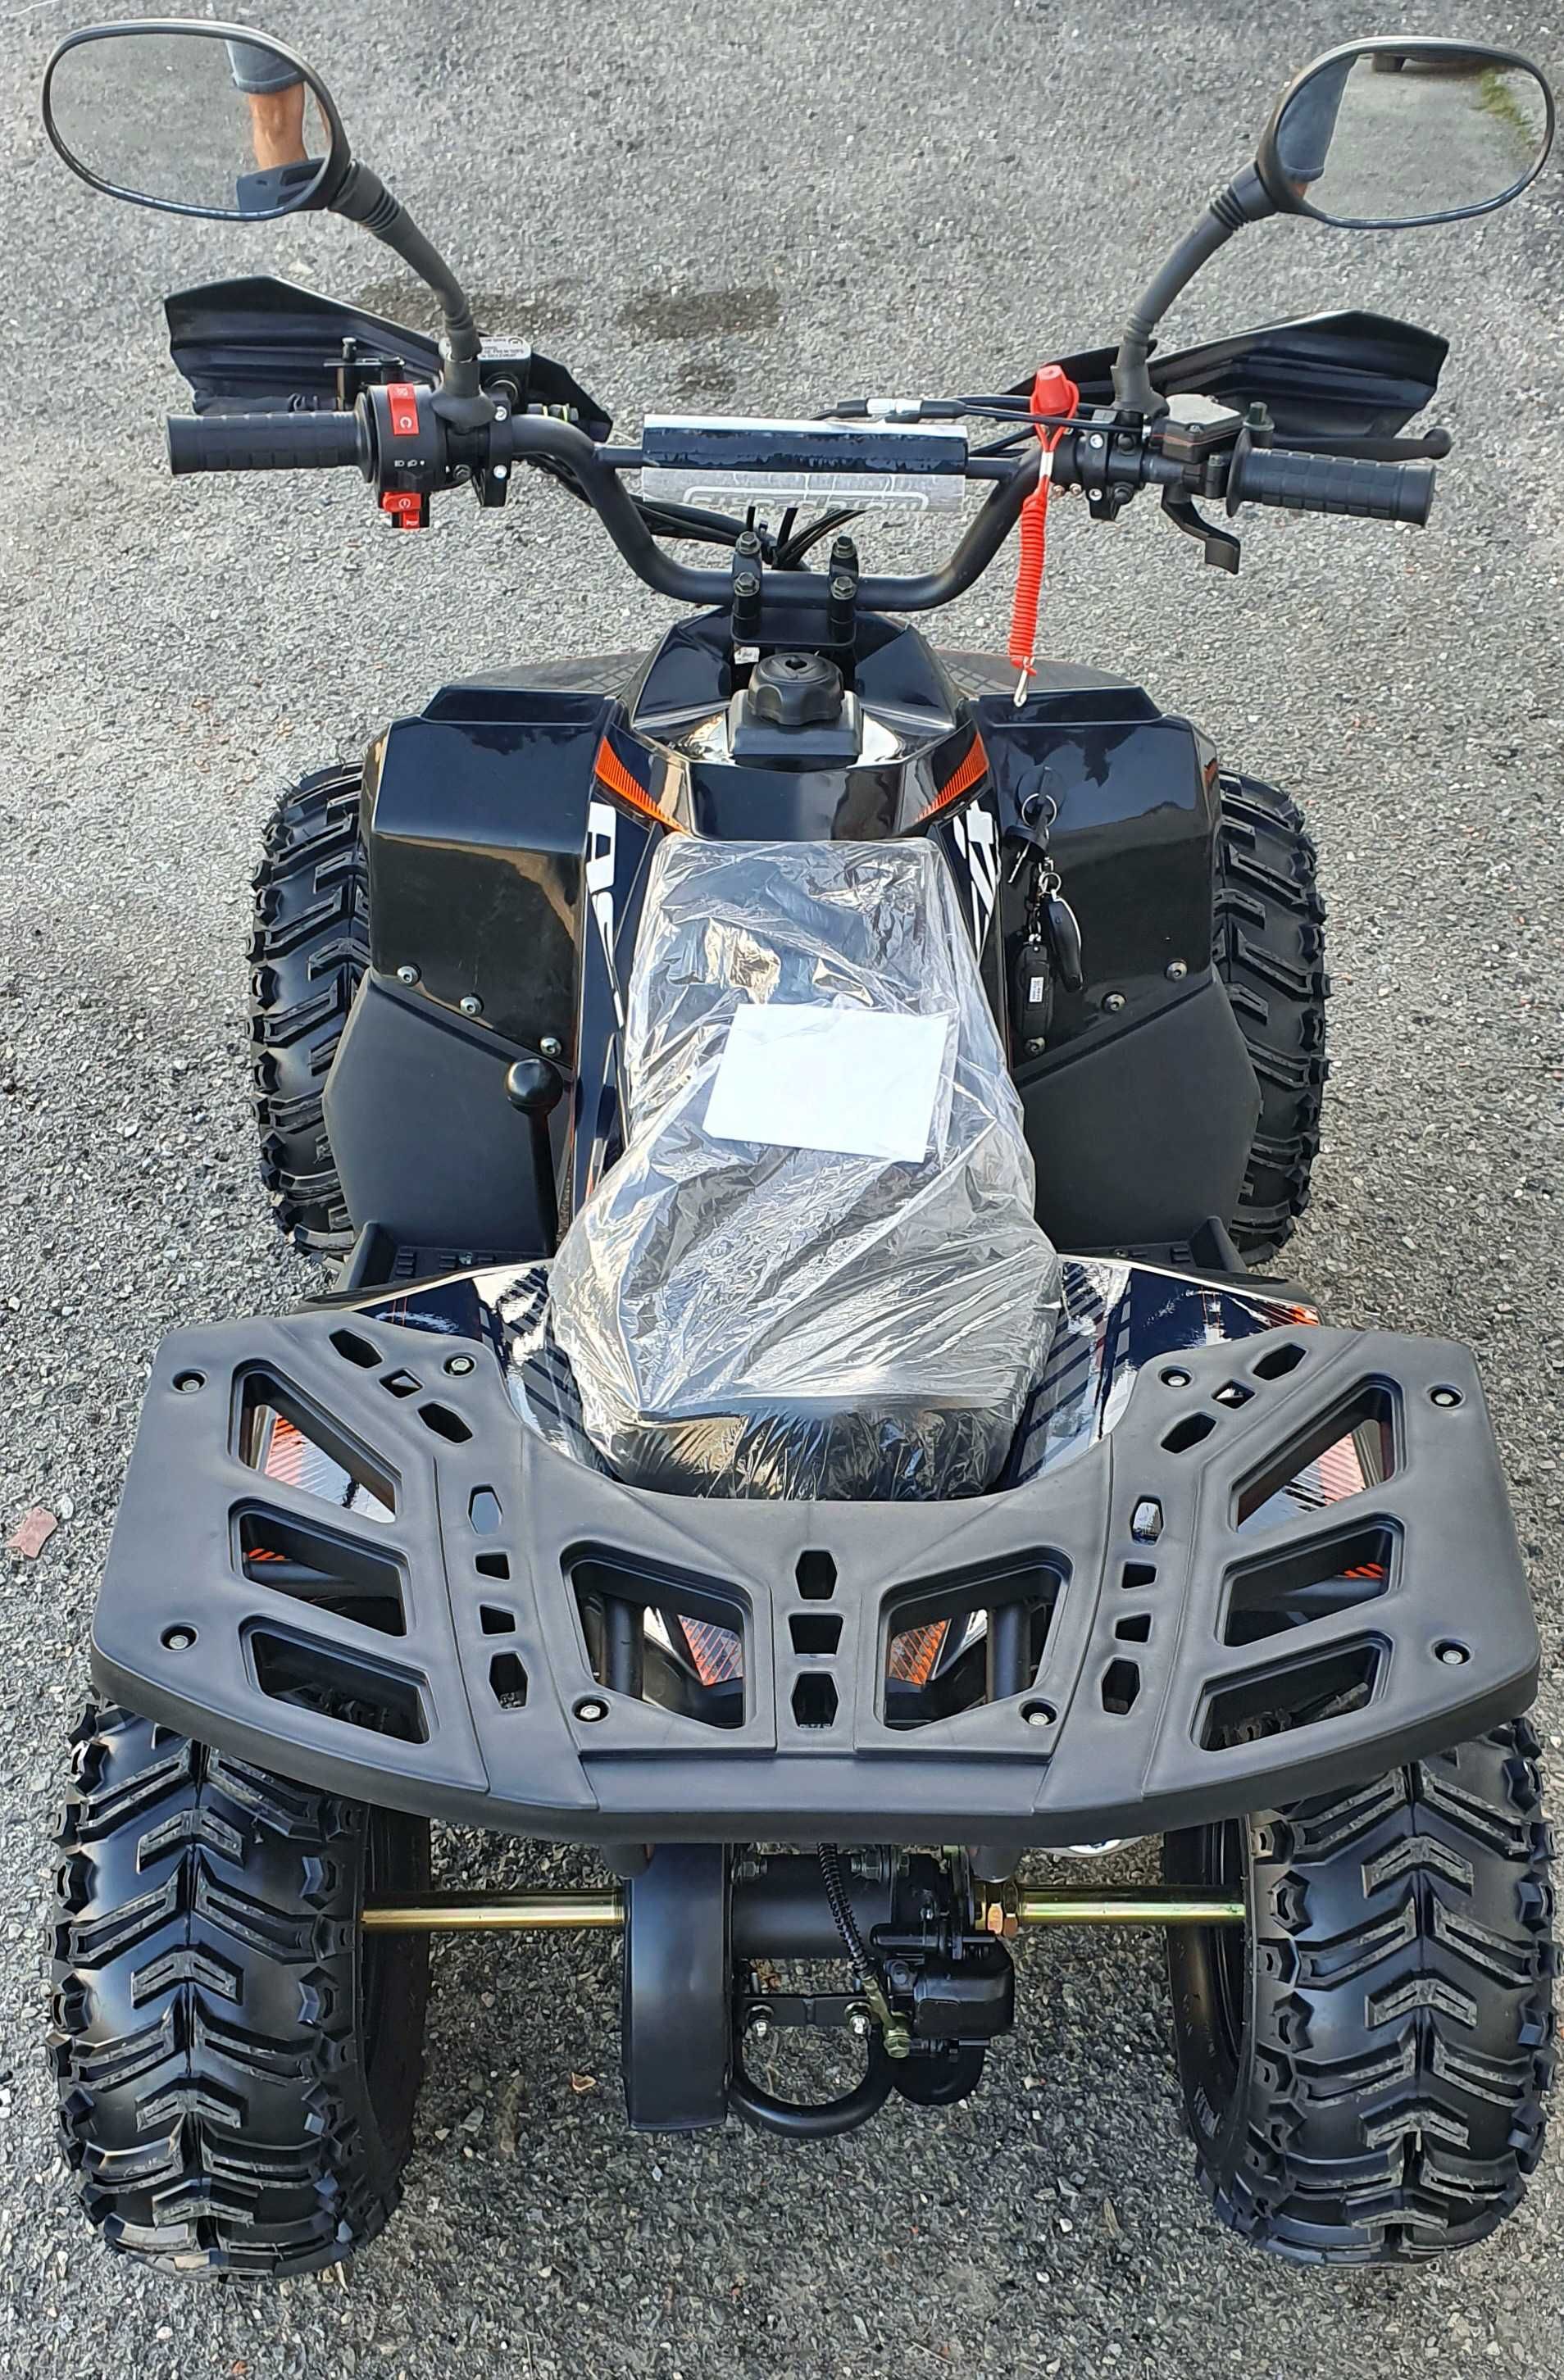 Новий Квадроцикл ATV MudHawk 110куб 2023р. |Гарантія|Вибір|Доставка